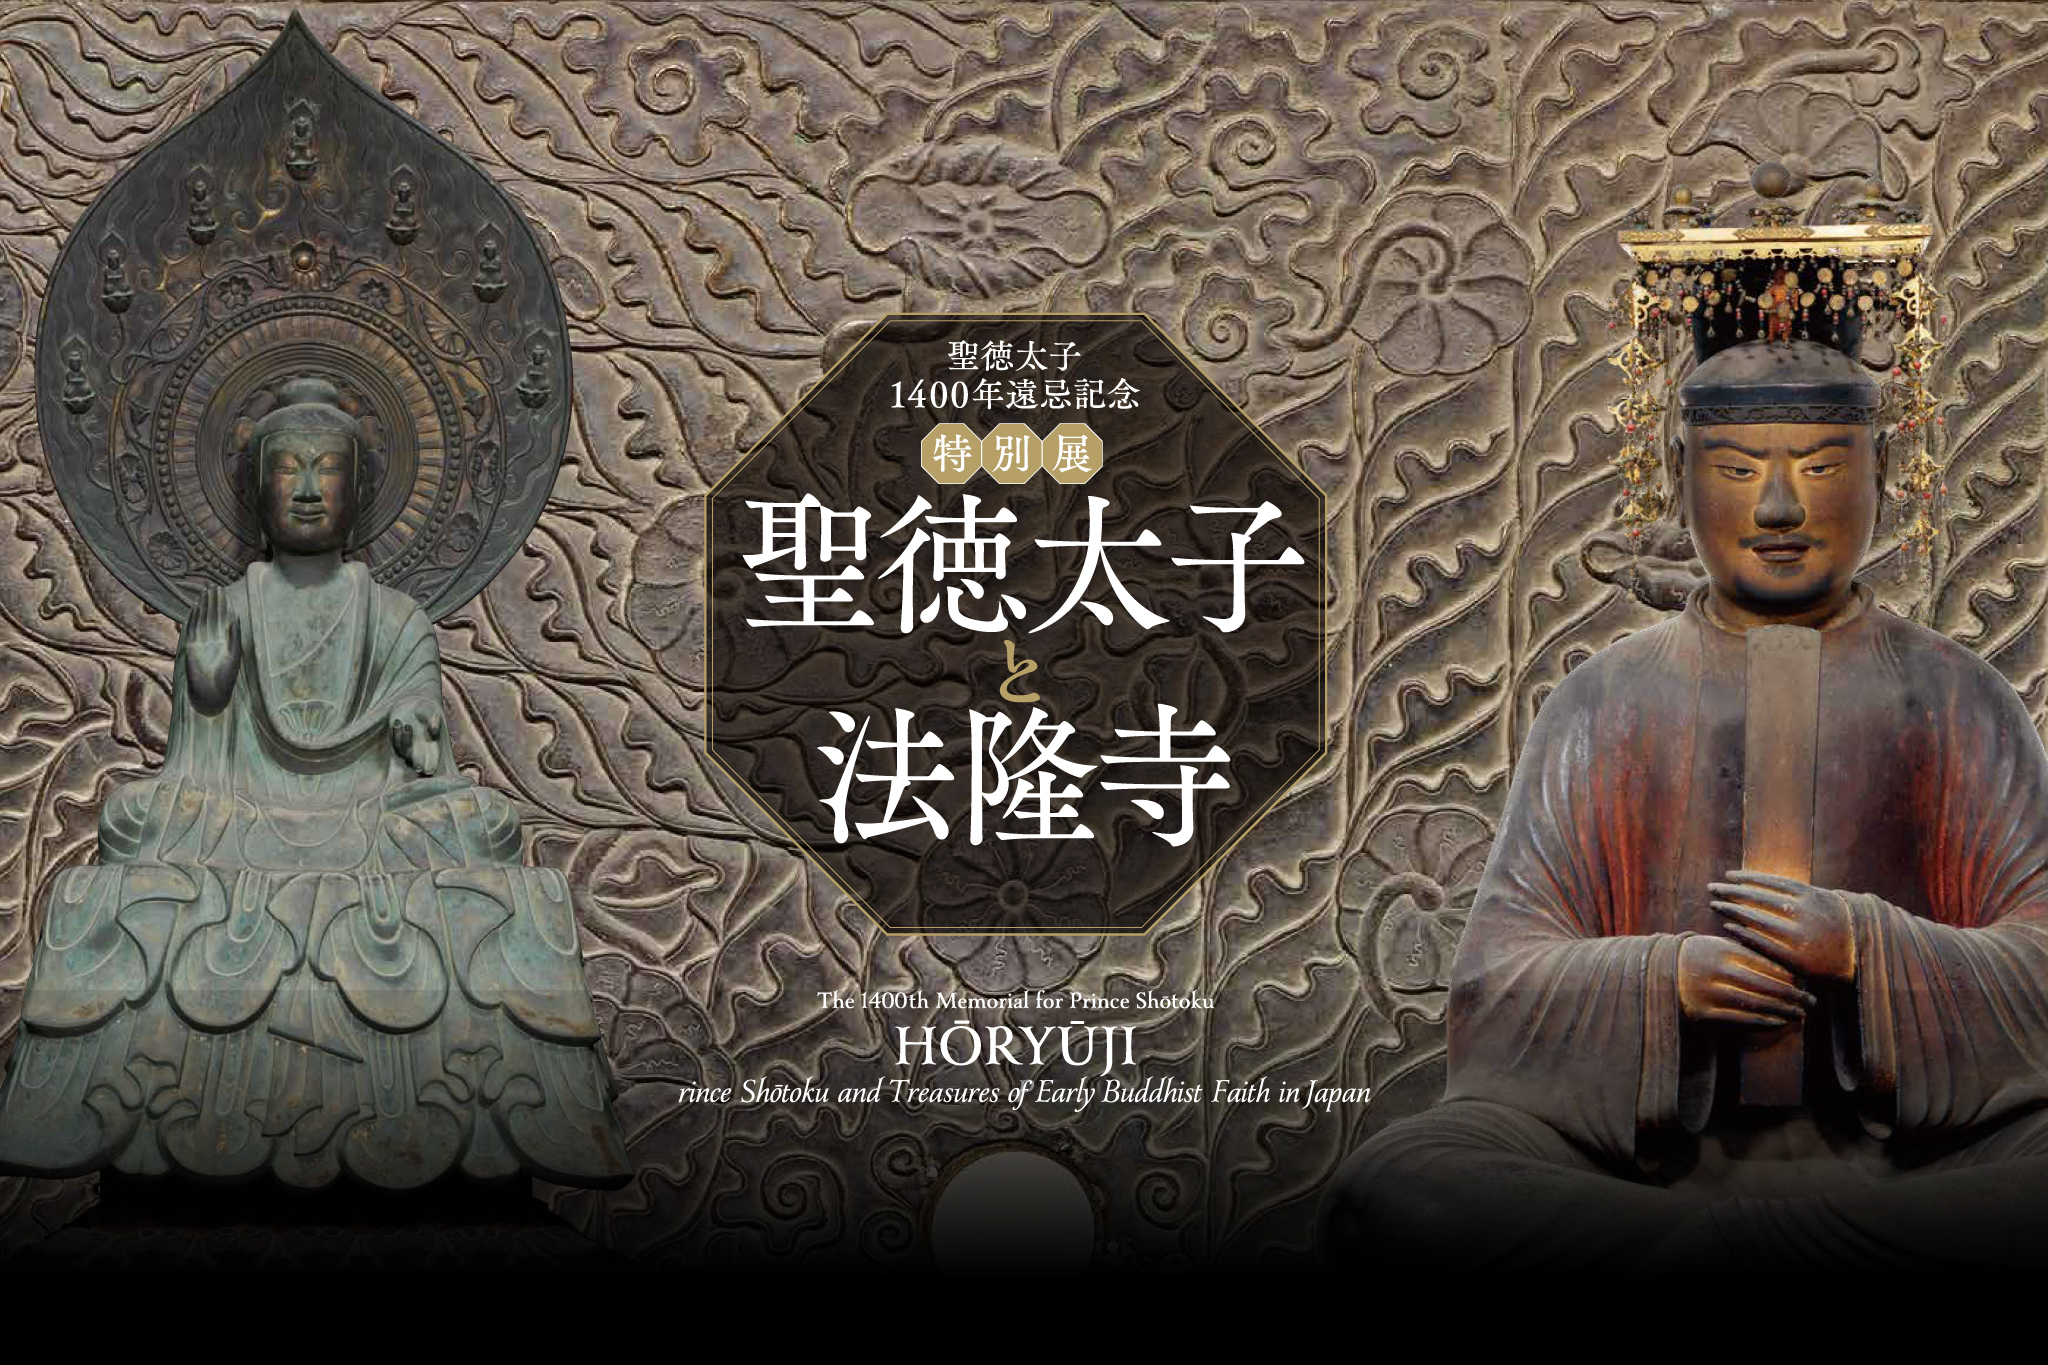 聖徳太子1400年遠忌記念 特別展『聖徳太子と法隆寺』が7月より東京国立博物館で開催—過去最大規模で聖徳太子ゆかりの寺宝公開